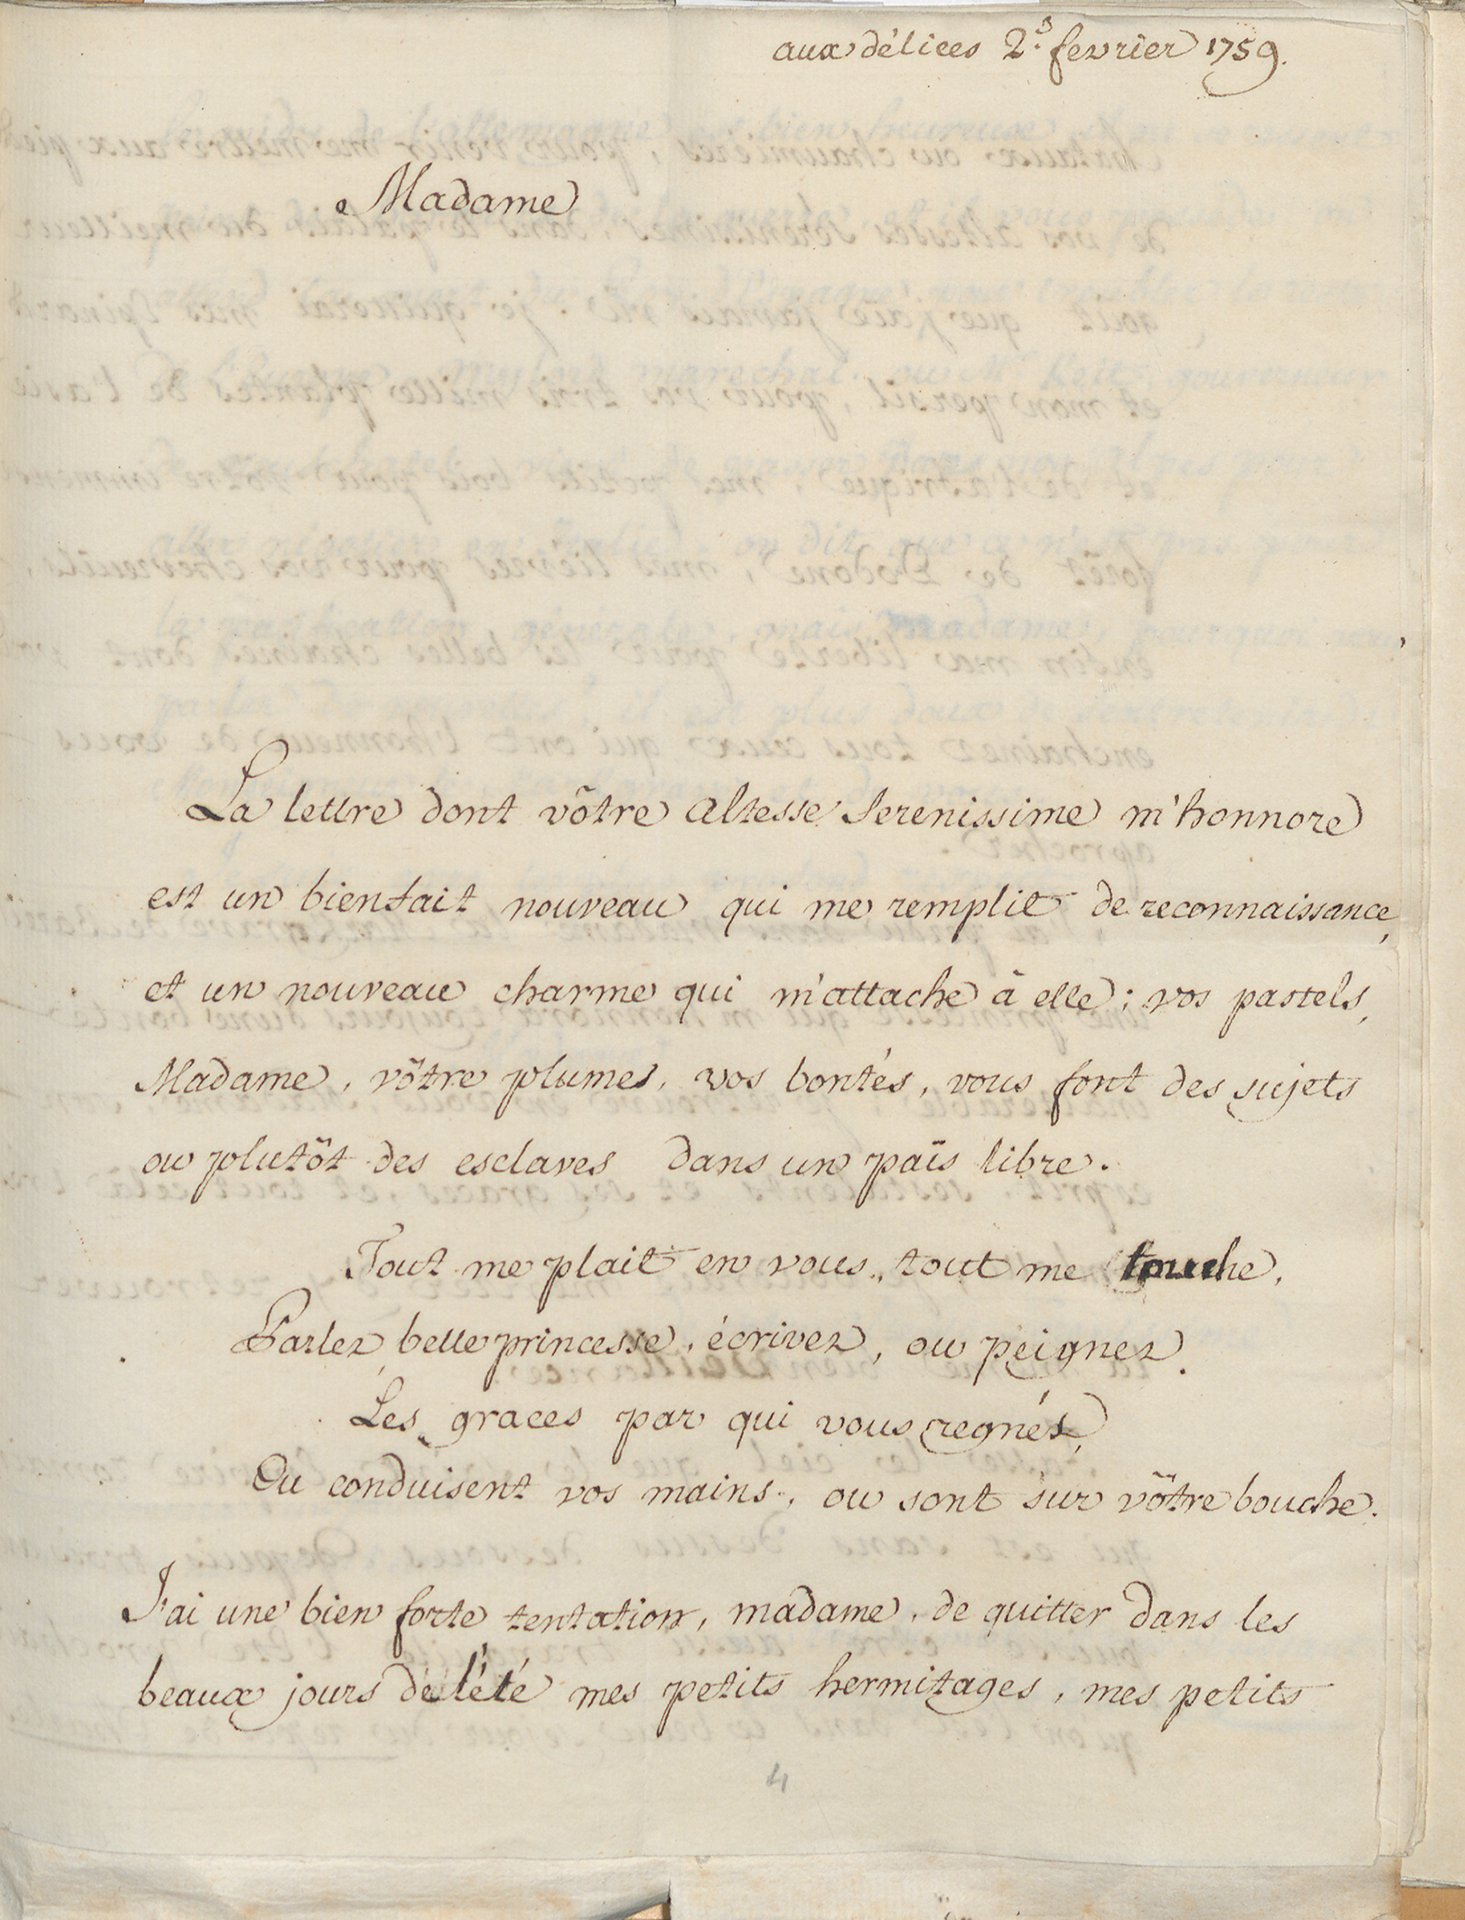 Abbildung des Briefs von Voltaire an Karoline Luise vom 2. Februar 1759, der in der Ausstellung "Die Meister-Sammlerin" vom 30. Mai 2015 bis 6. September 2015 in der Staatlichen Kunsthalle Karlsruhe zu sehen war.